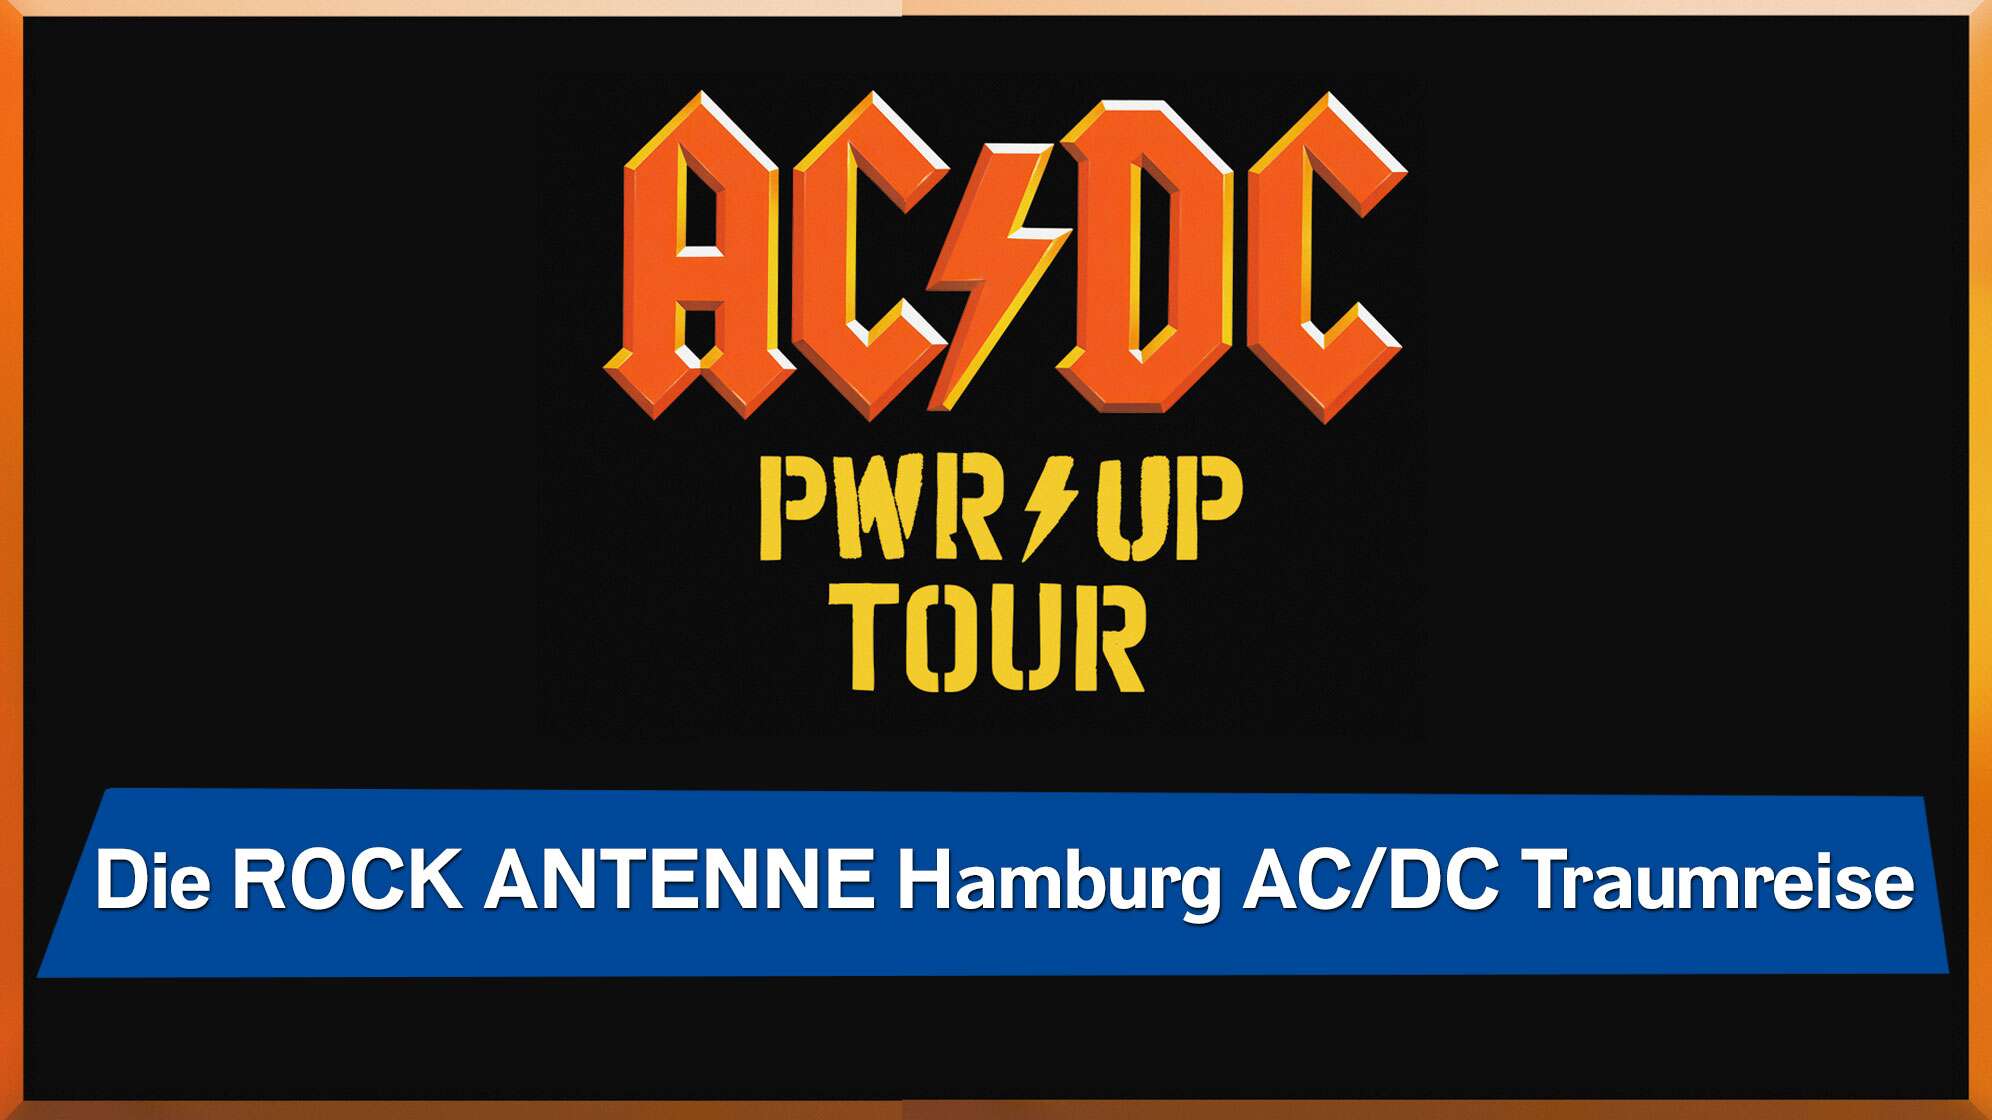 Schwarzer Hintergrund mit rotem AC/DC Logo, dazu gelbem Power Up Tour-Schriftzug, dazu der Text: Die ROCK ANTENNE Hamburg AC/DC Traumreise